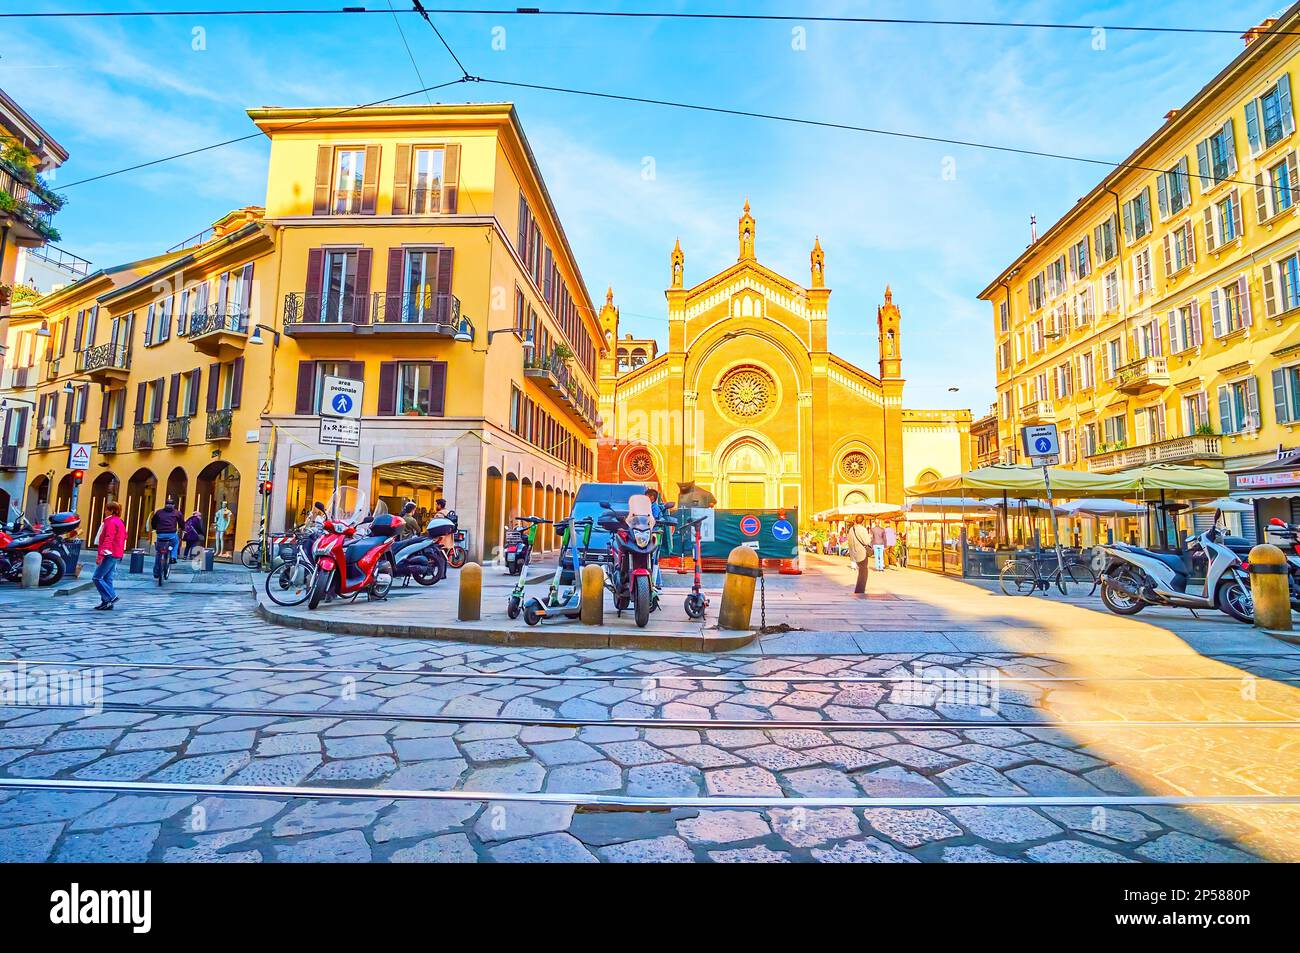 MAILAND, ITALIEN - 11. APRIL 2022: Piazza del Carmine im Stadtteil Brera mit Restaurants, Tavernen und Restaurants im Freien, am 11. April in Mailand, Italien Stockfoto